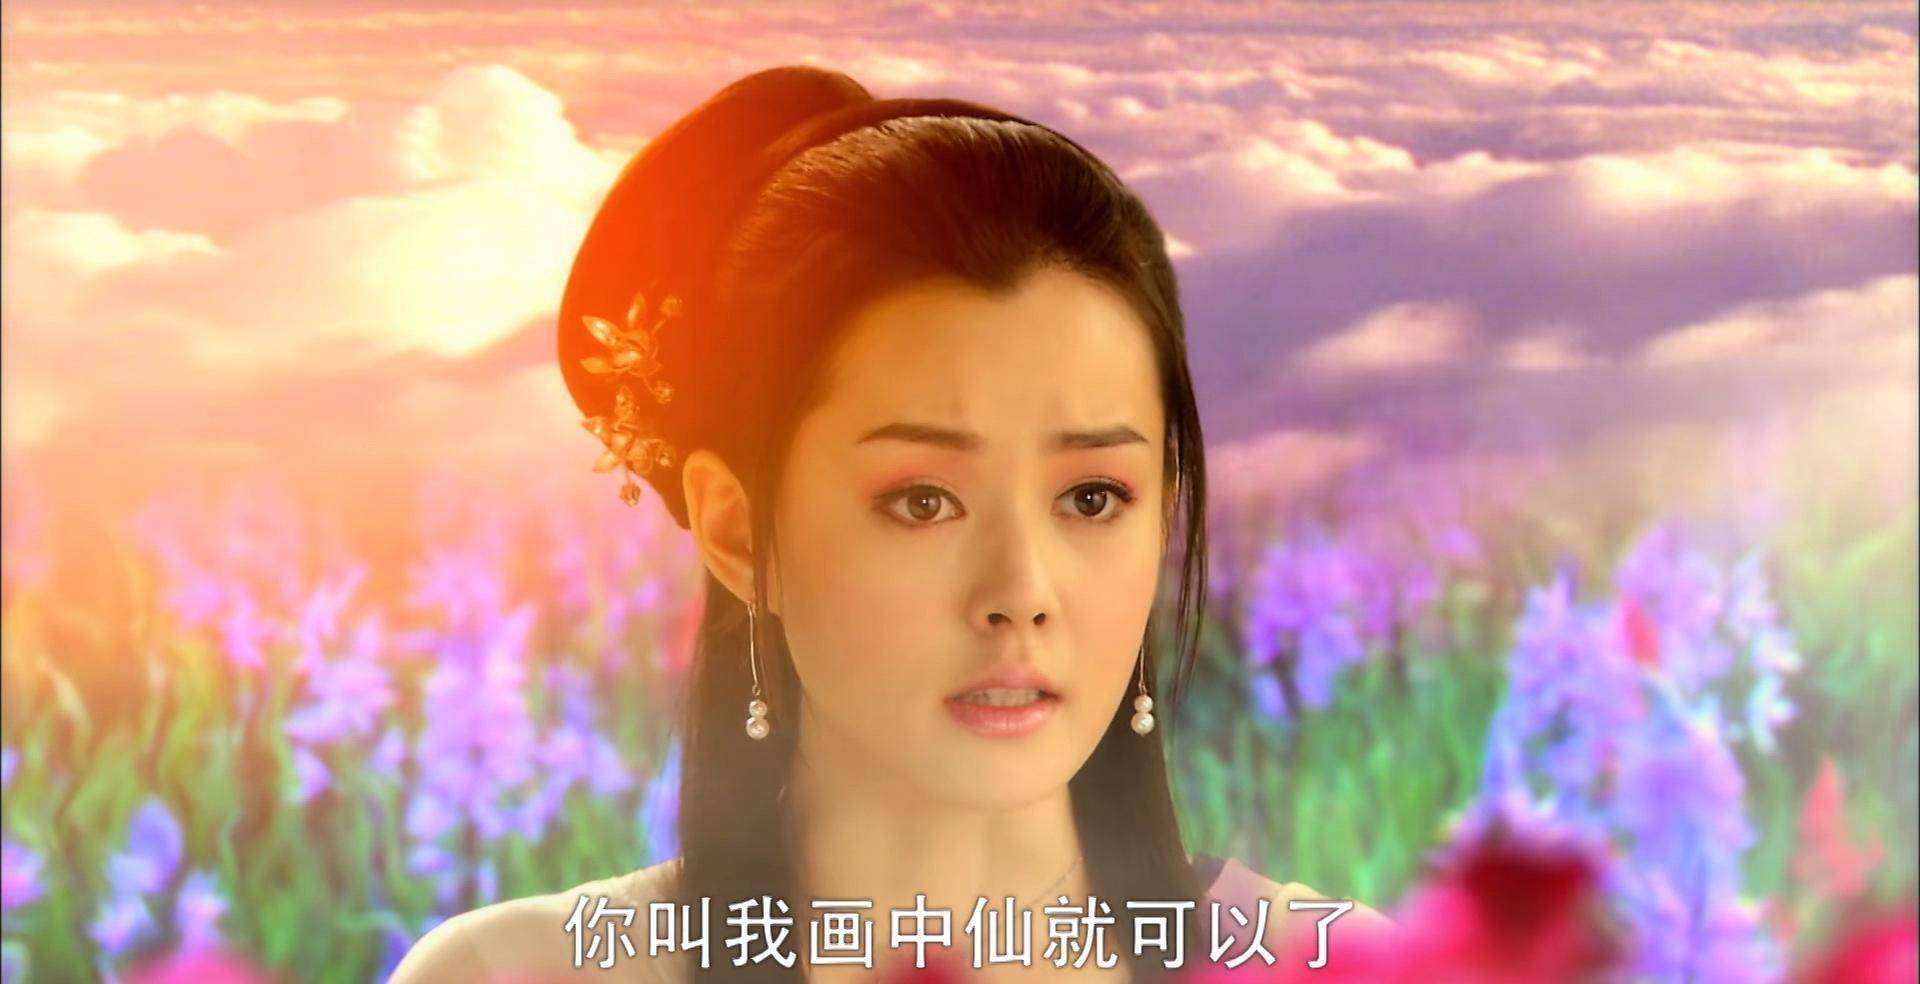 刘一含饰演的白牡丹仙气飘飘,清新脱俗,俨然就是一个花仙子